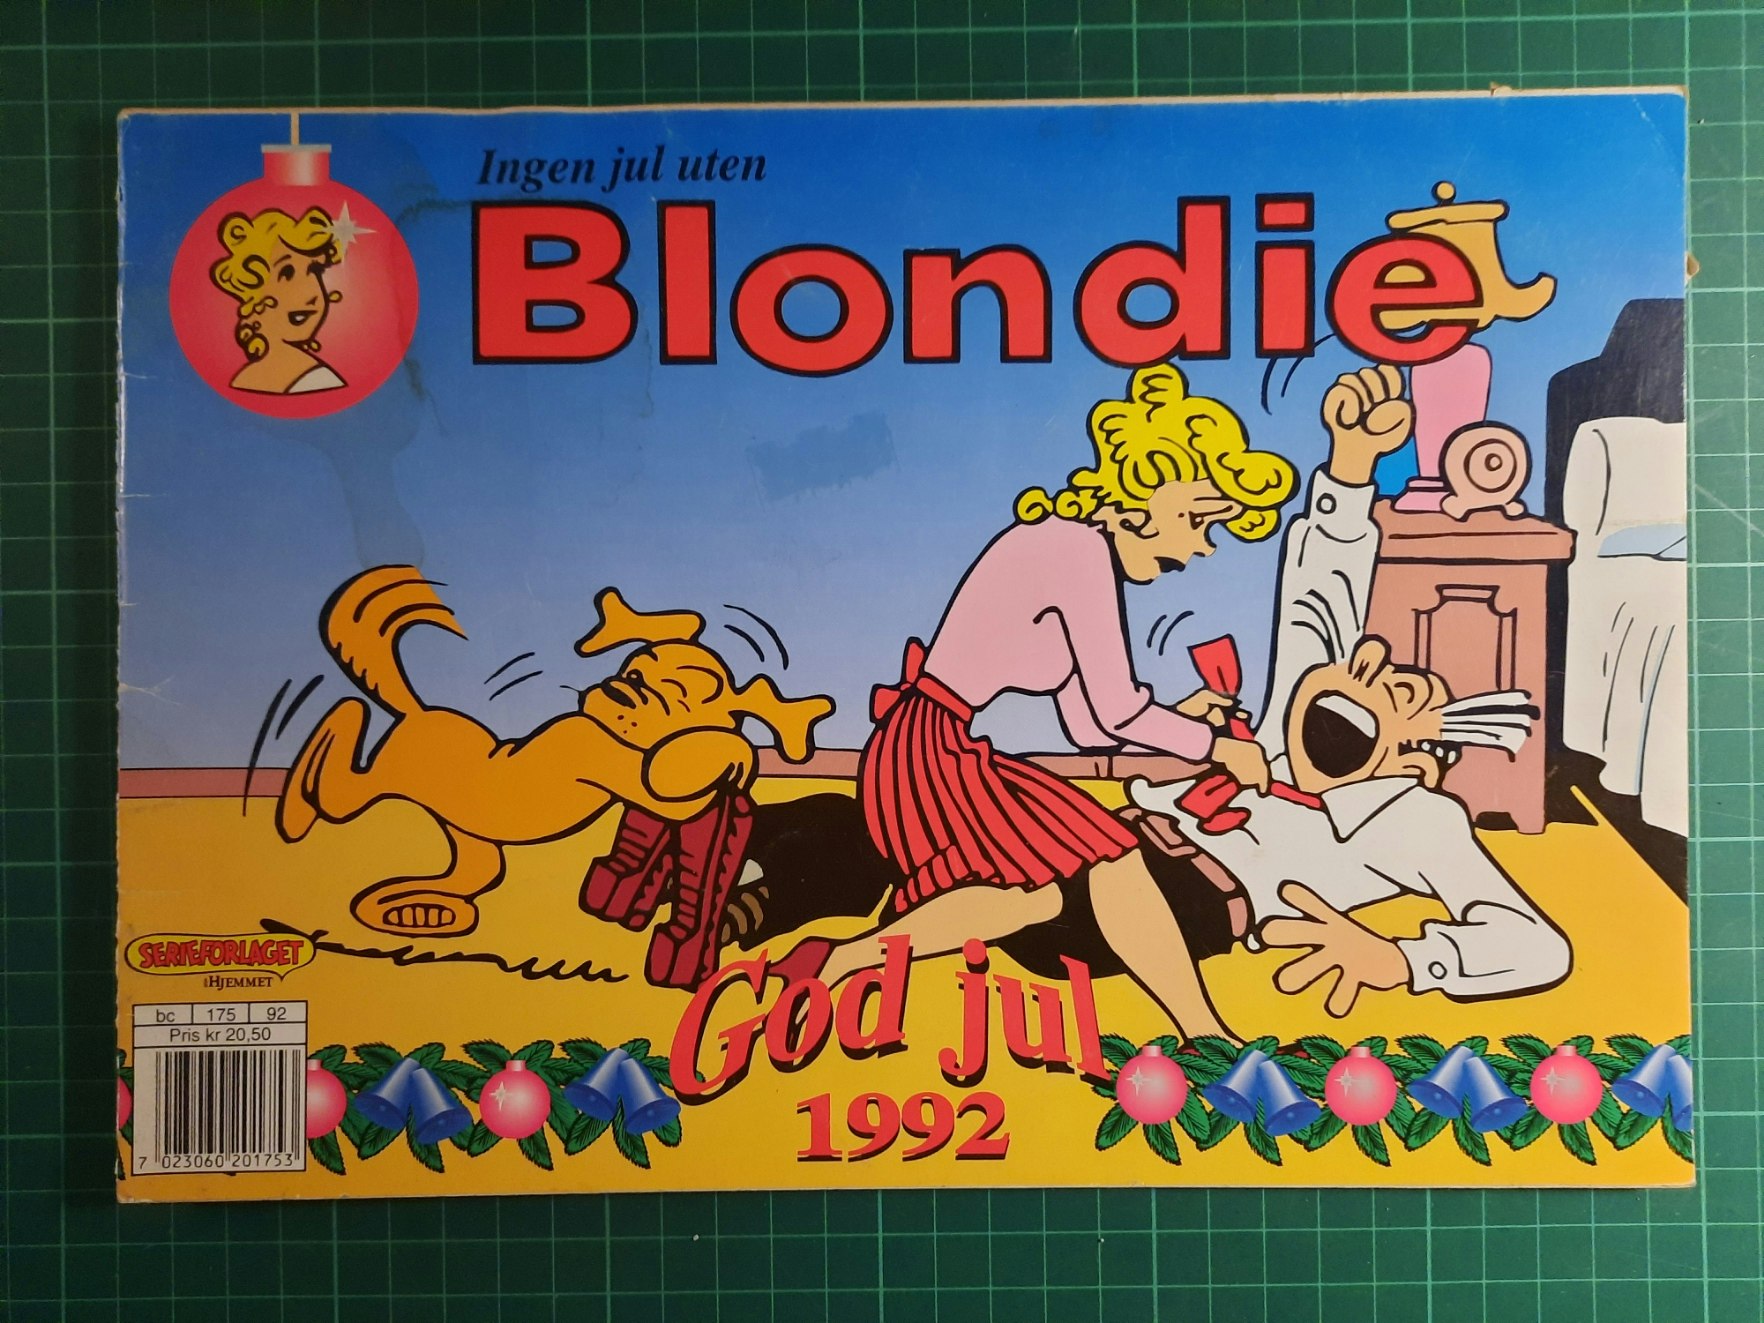 Blondie Julen 1992